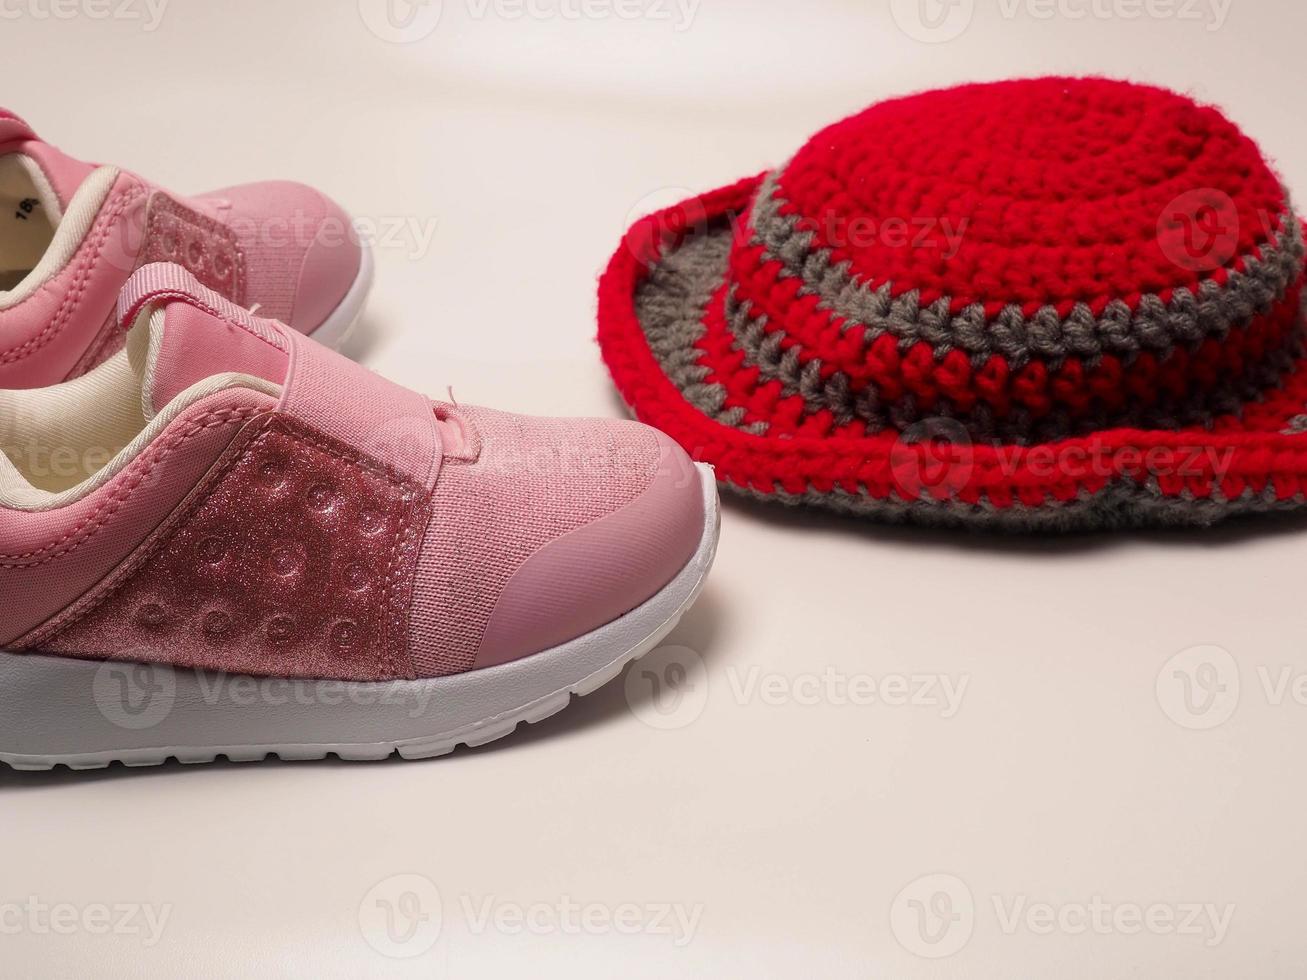 foto di colore rosso con cappello all'uncinetto a righe grigie e un paio di scarpe rosa